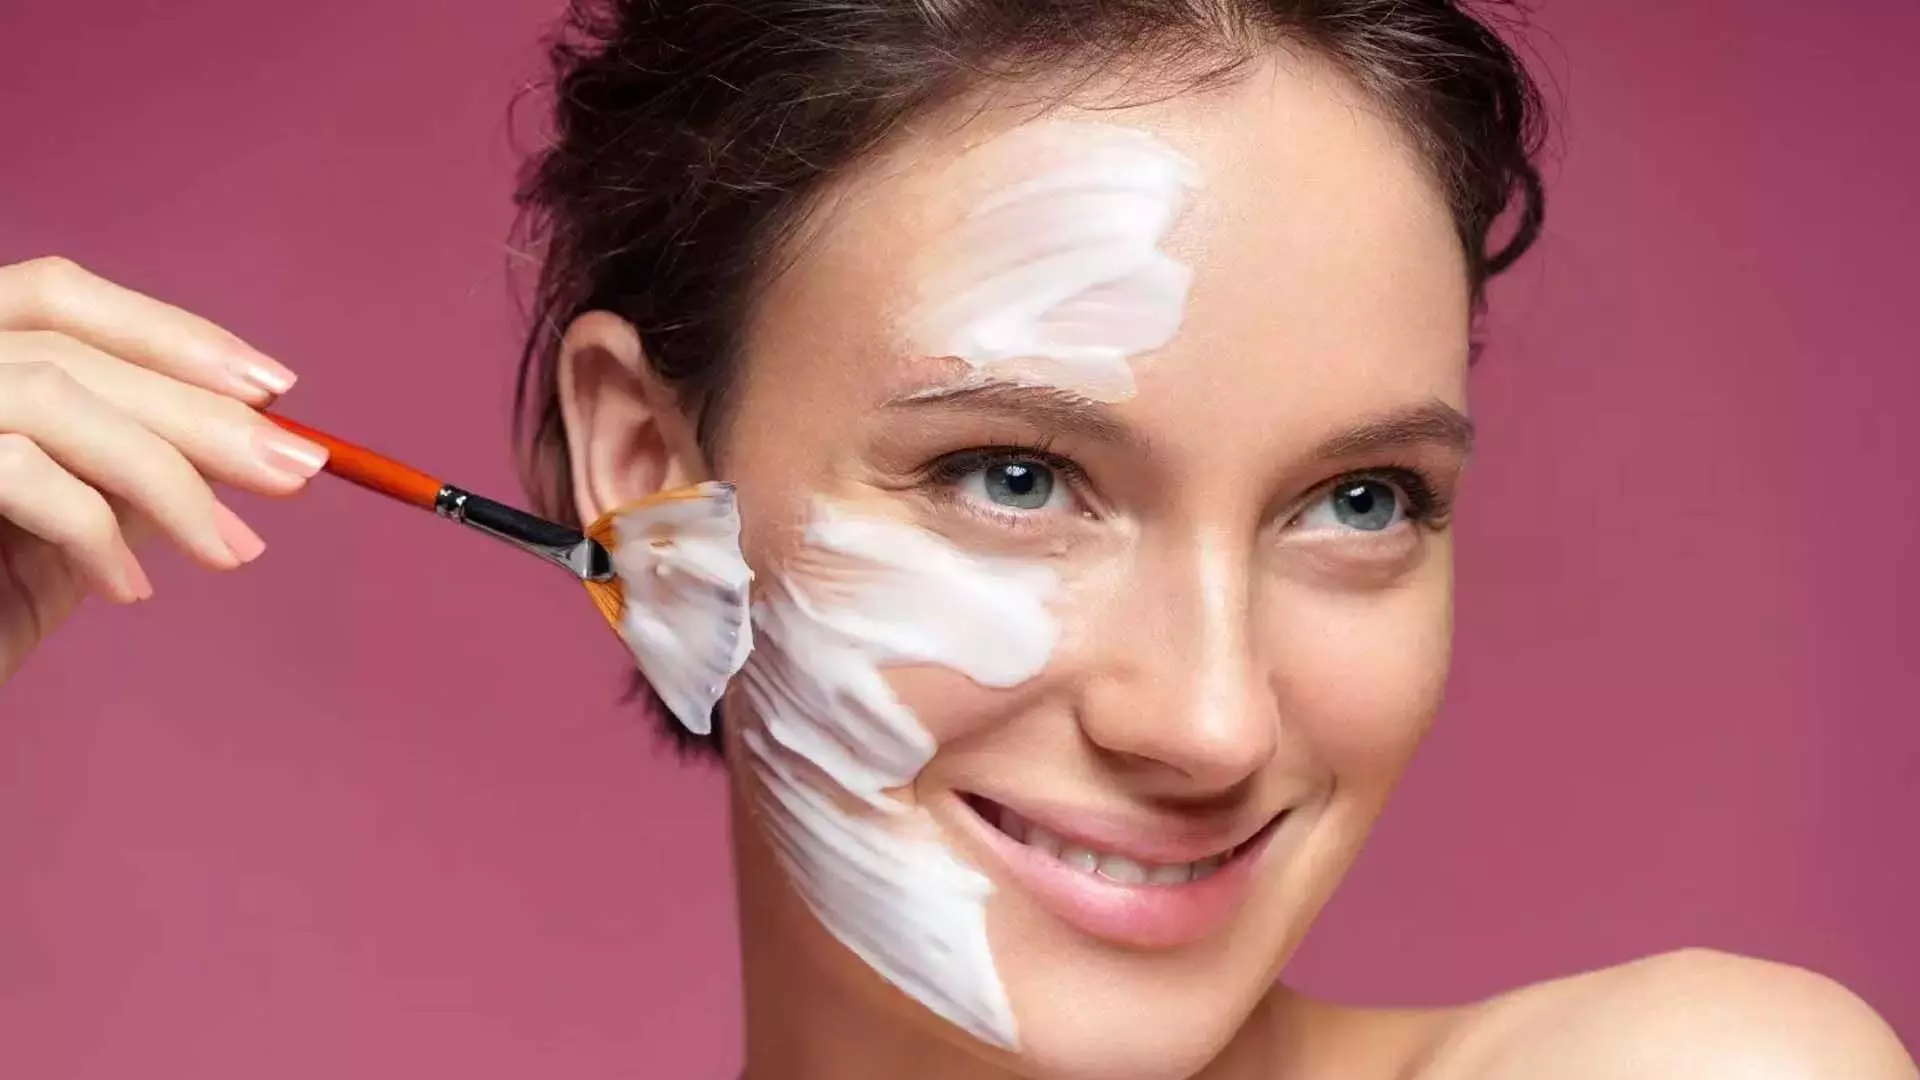 skin care: दमकती त्वचा पाने का सस्ता जुगाड़ हैं दही ये 9 फेसपैक